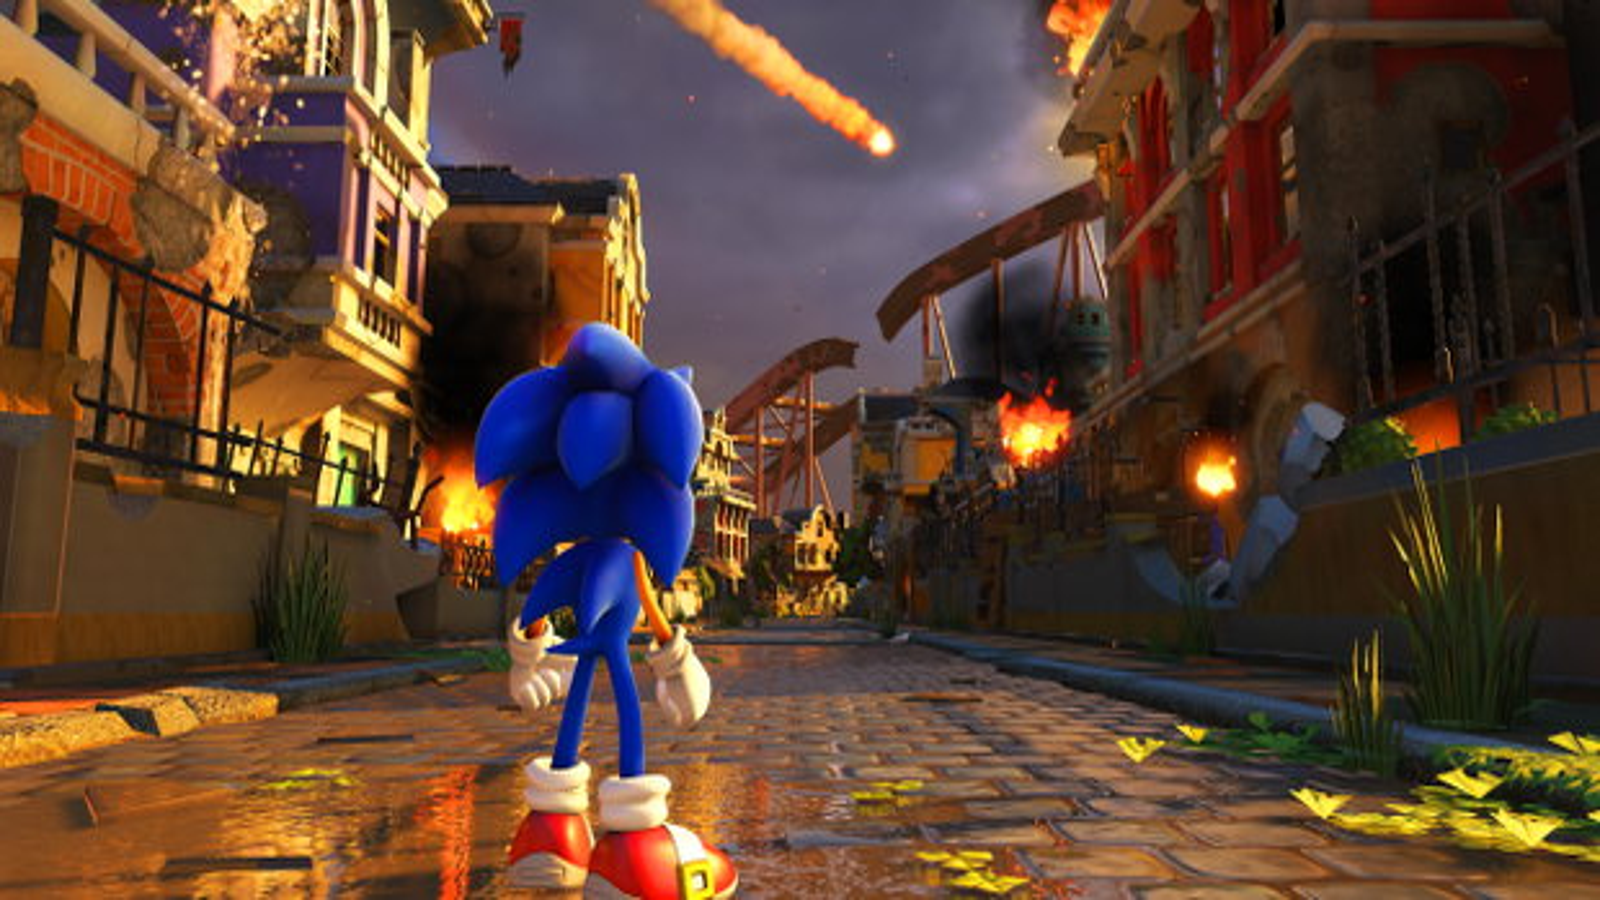 Arms e Sonic Forces são destaques nos trailers de jogos da semana